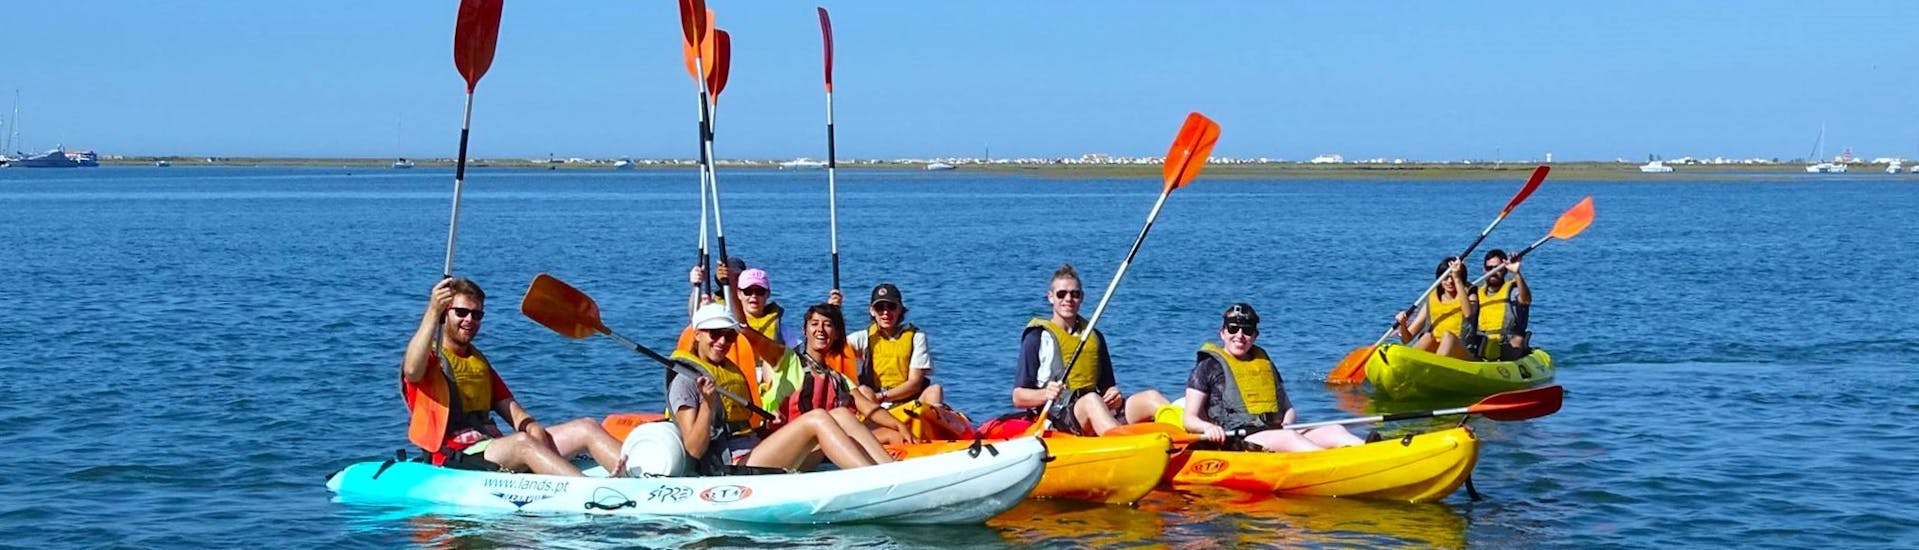 Eine Gruppe von Teilnehmern paddelt an einem sonnigen Tag die Ria Formosa hinunter, während einer Kajaktour ab Faro mit Lands Algarve.